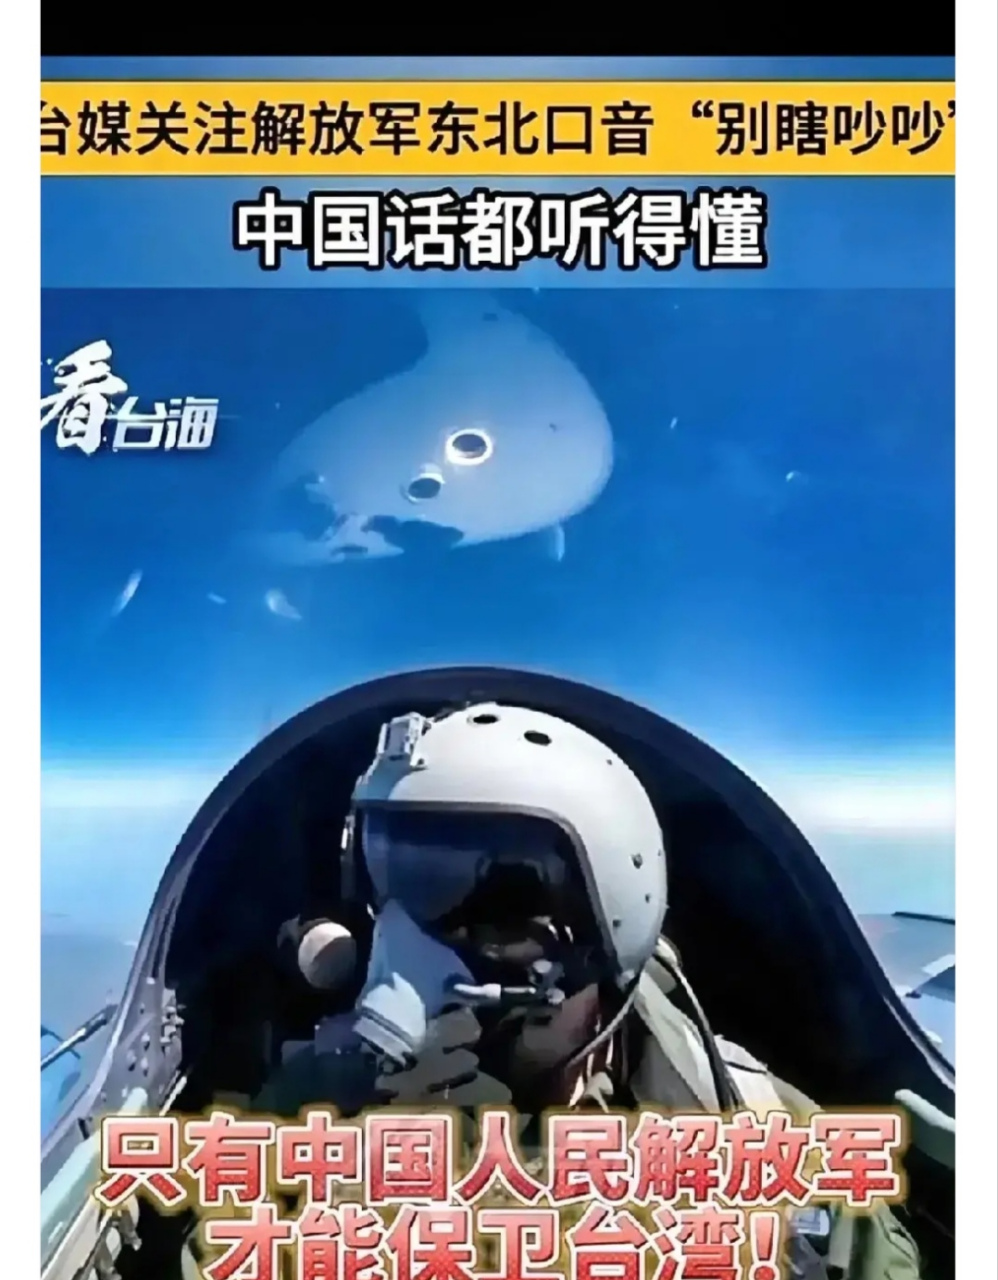 刚看了台湾空军播放的一段视频,应该是我歼20飞机巡航越过了所谓的